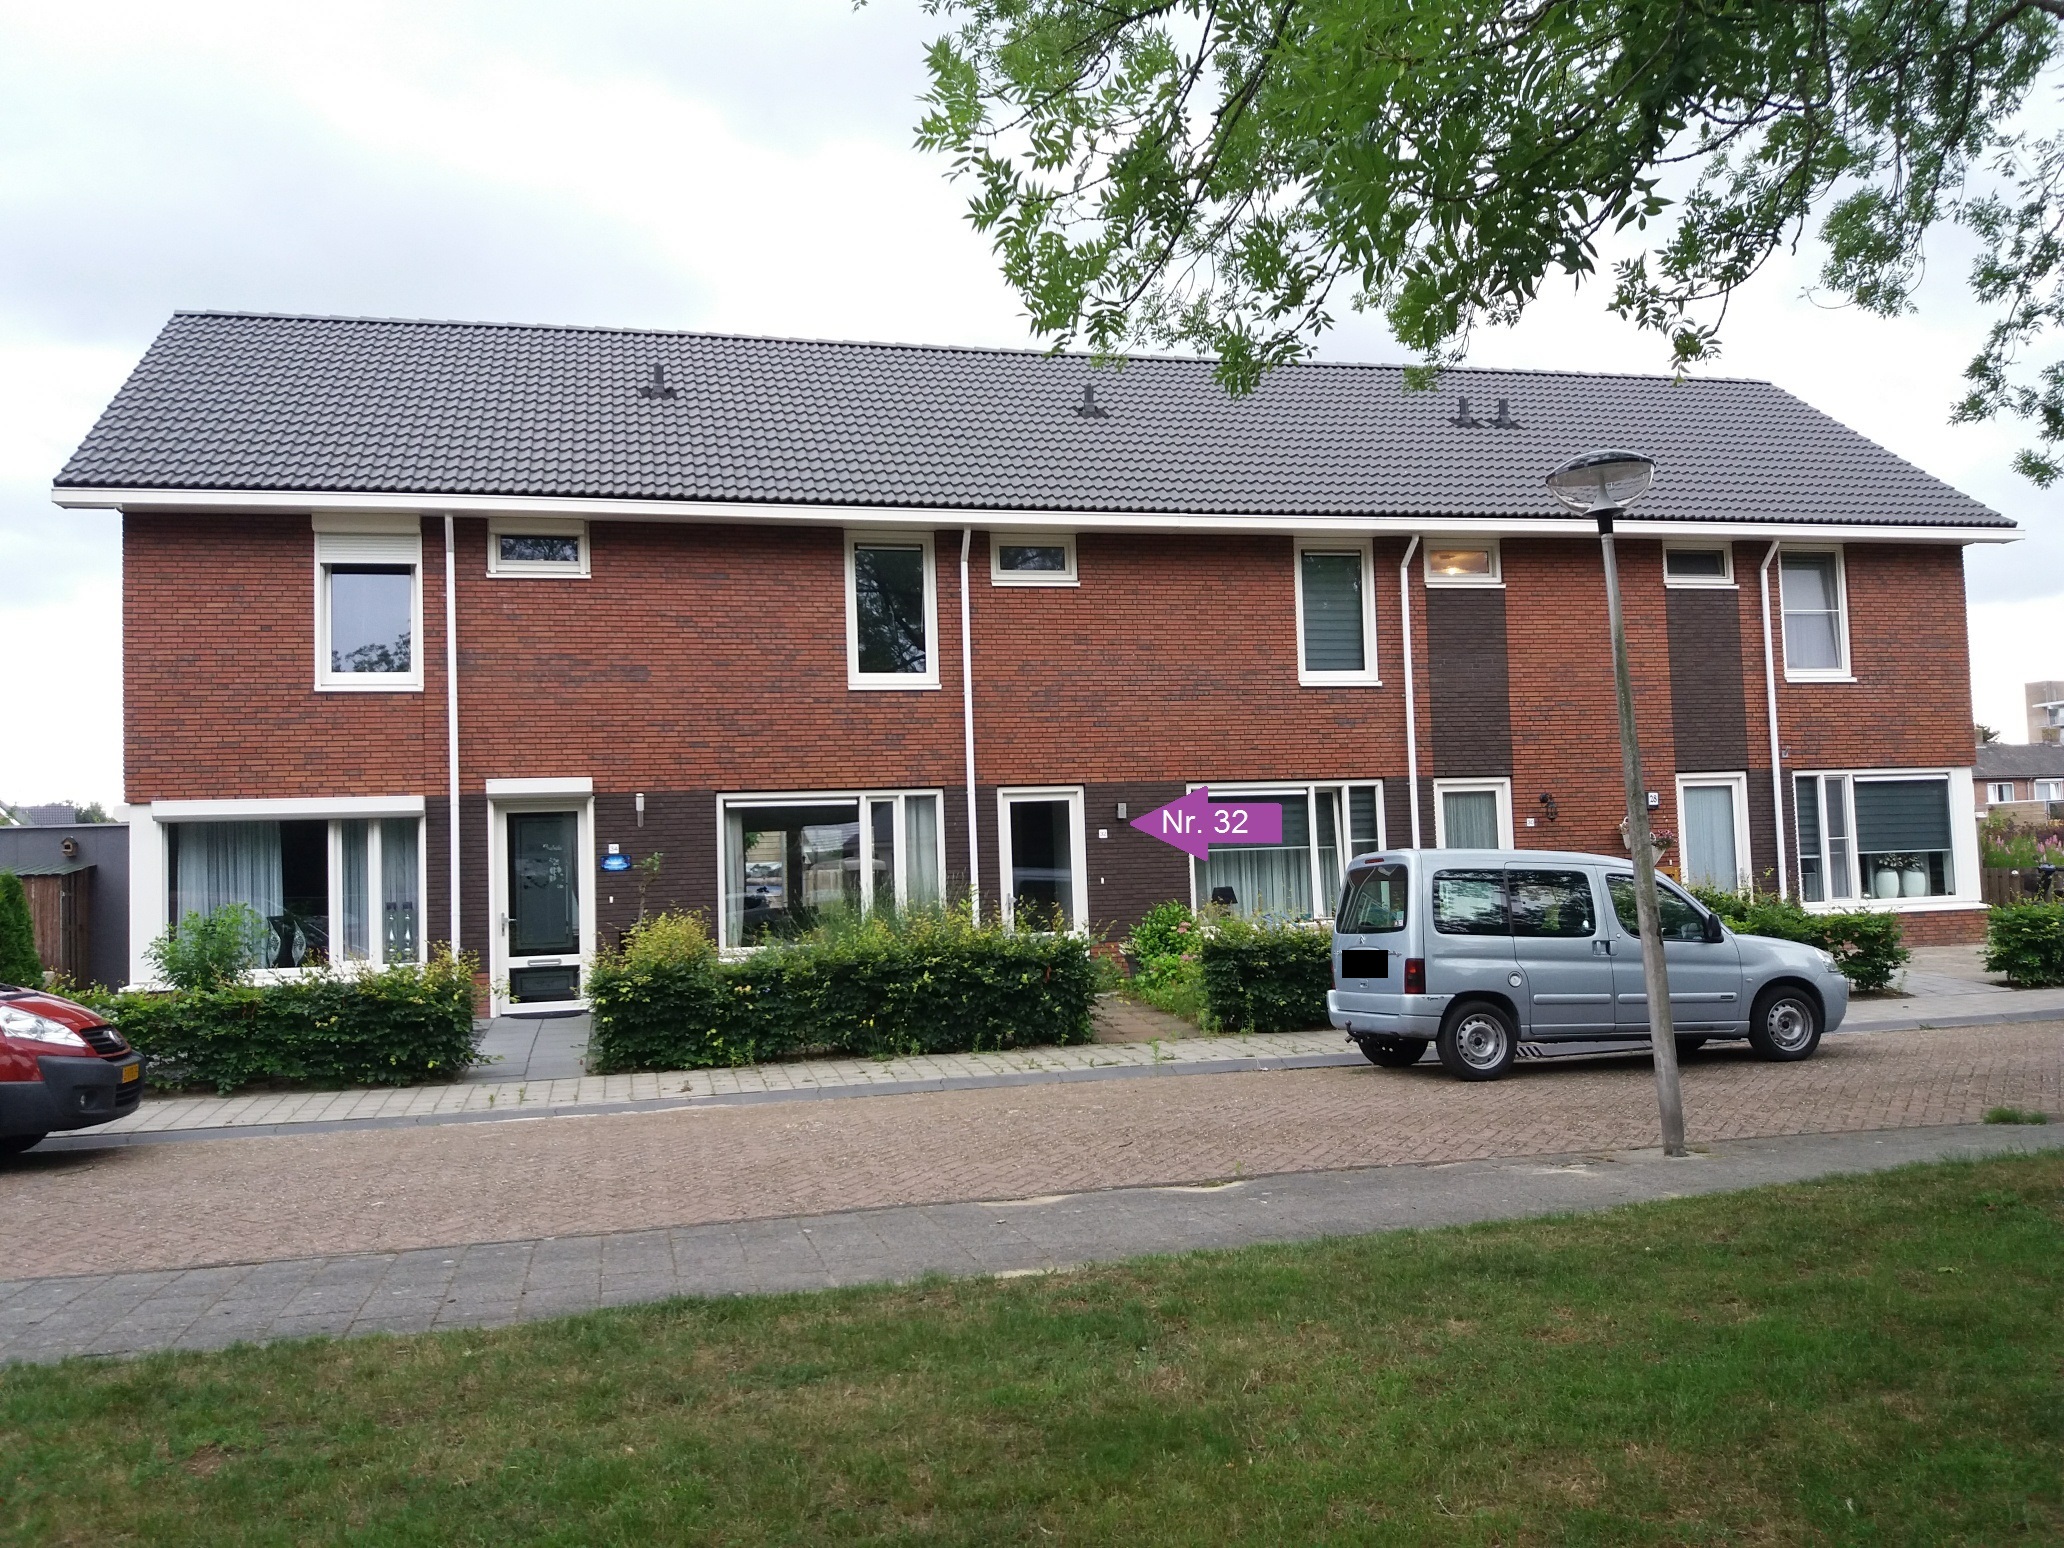 Jan van Scorelstraat 32, 7741 XL Coevorden, Nederland